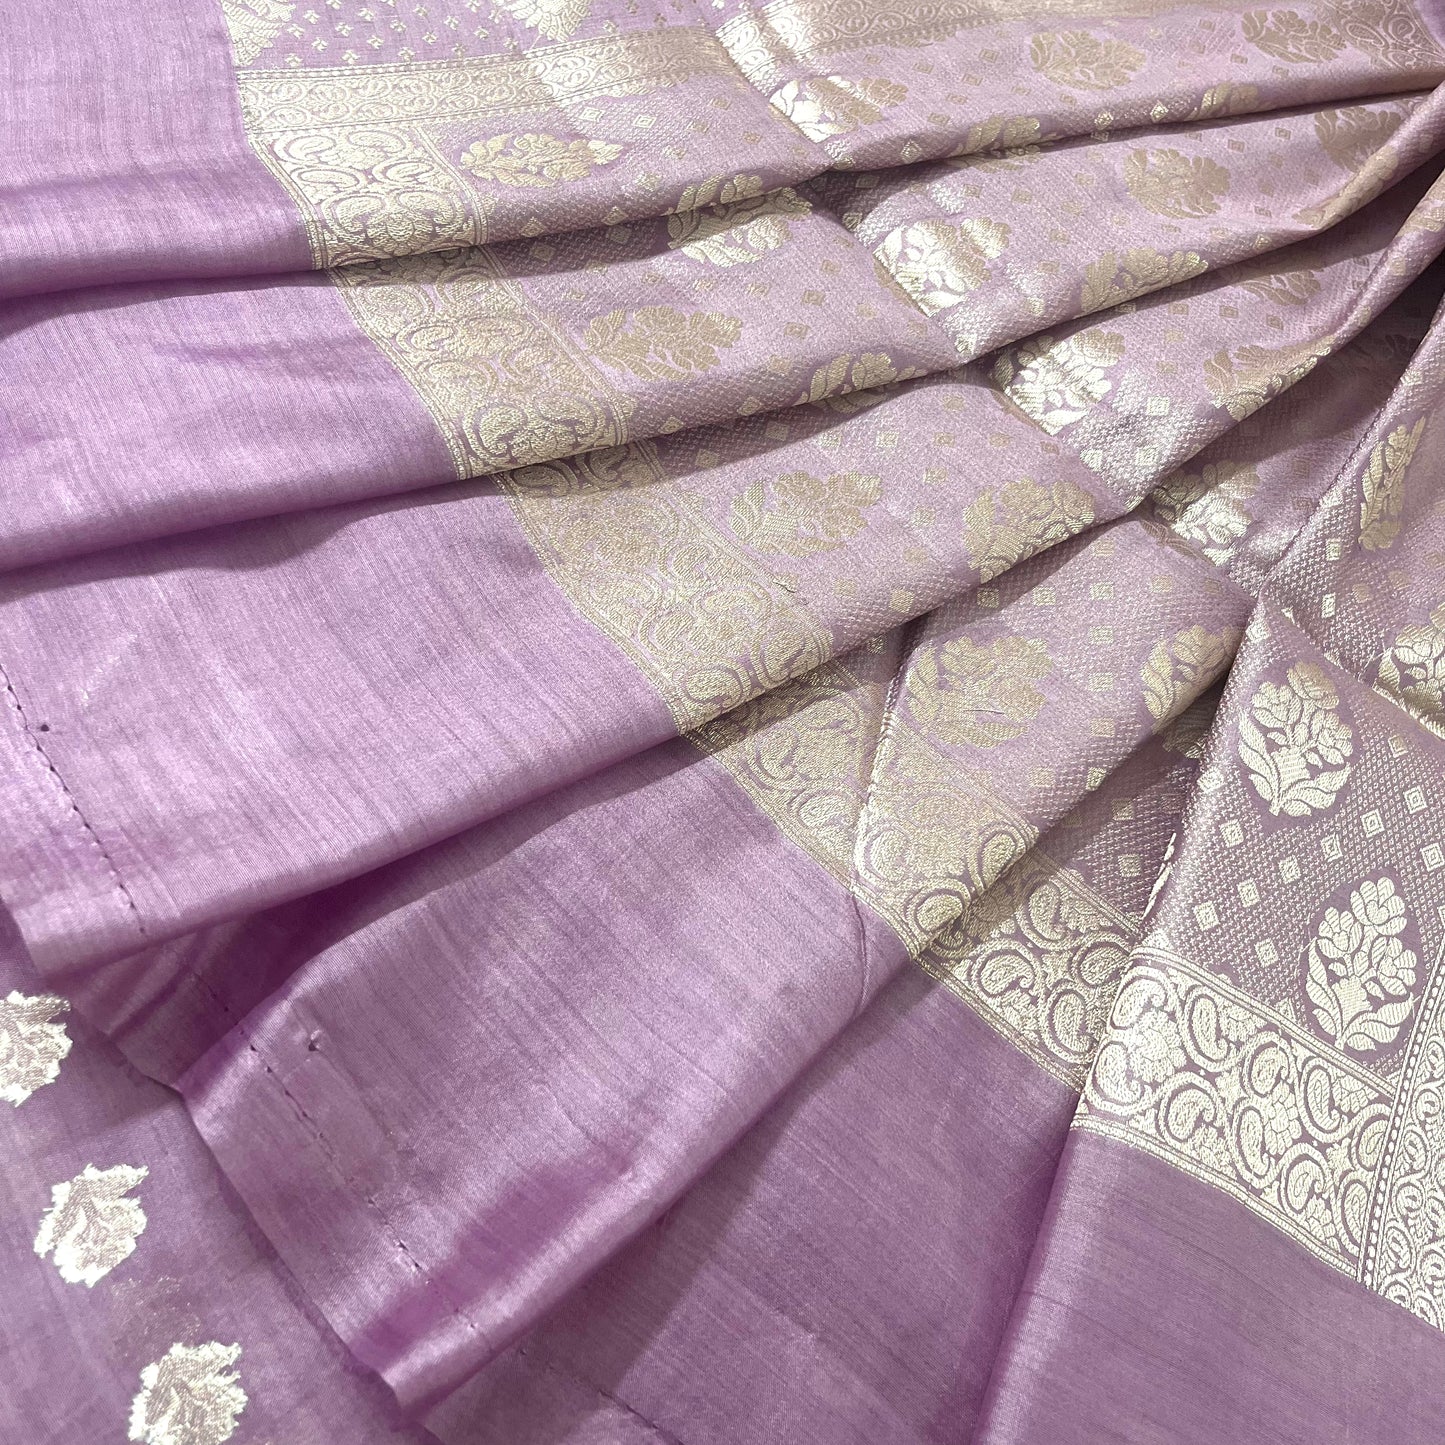 Mauve banarasi silk saree with zari motifs all over